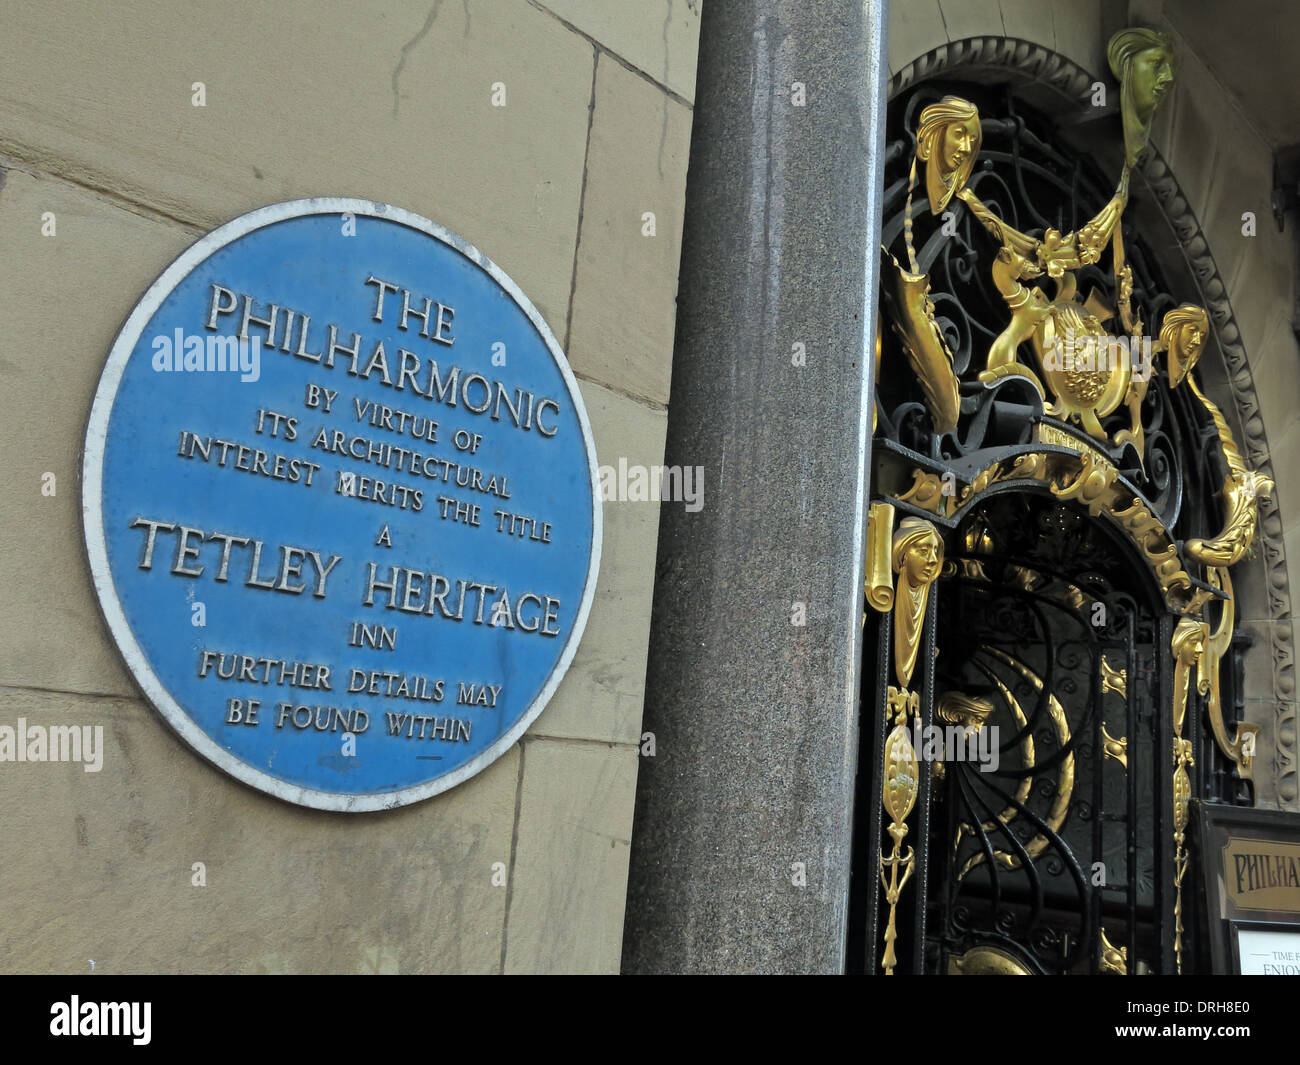 Entrée de la salle Philharmonique taverne dans l'or des chambres maritimes Liverpool Angleterre Royaume-uni - plaques du patrimoine bleu Banque D'Images